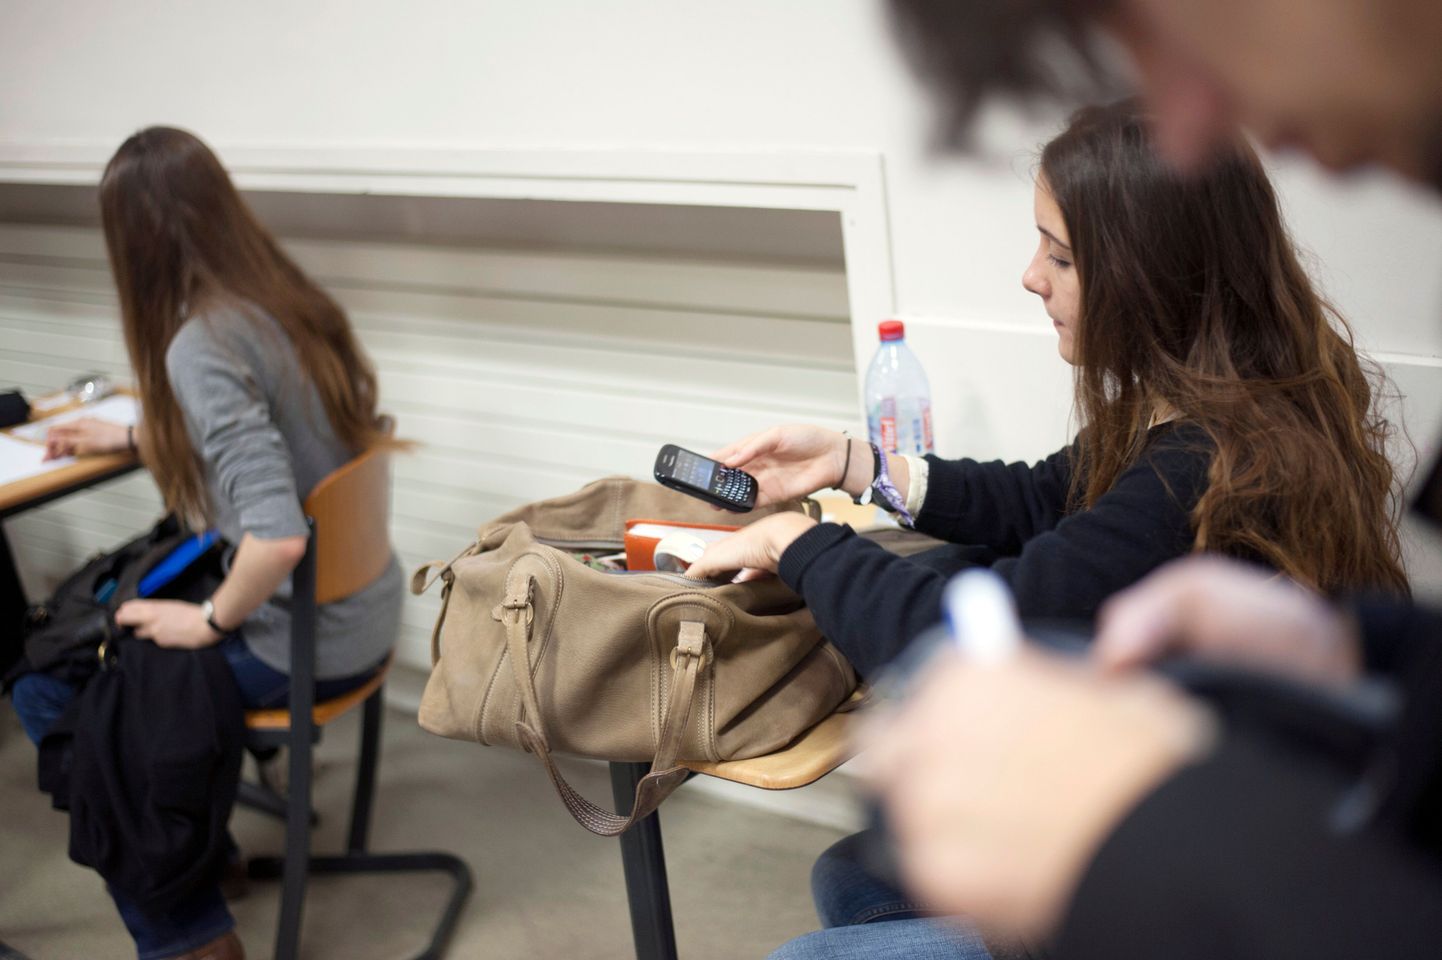 Prantsuse õpilane mobiiltelefoni enne eksamit välja lülitamas. Sellest õppeaastast on Prantsusmaa koolides mobiiltelefonide keeld